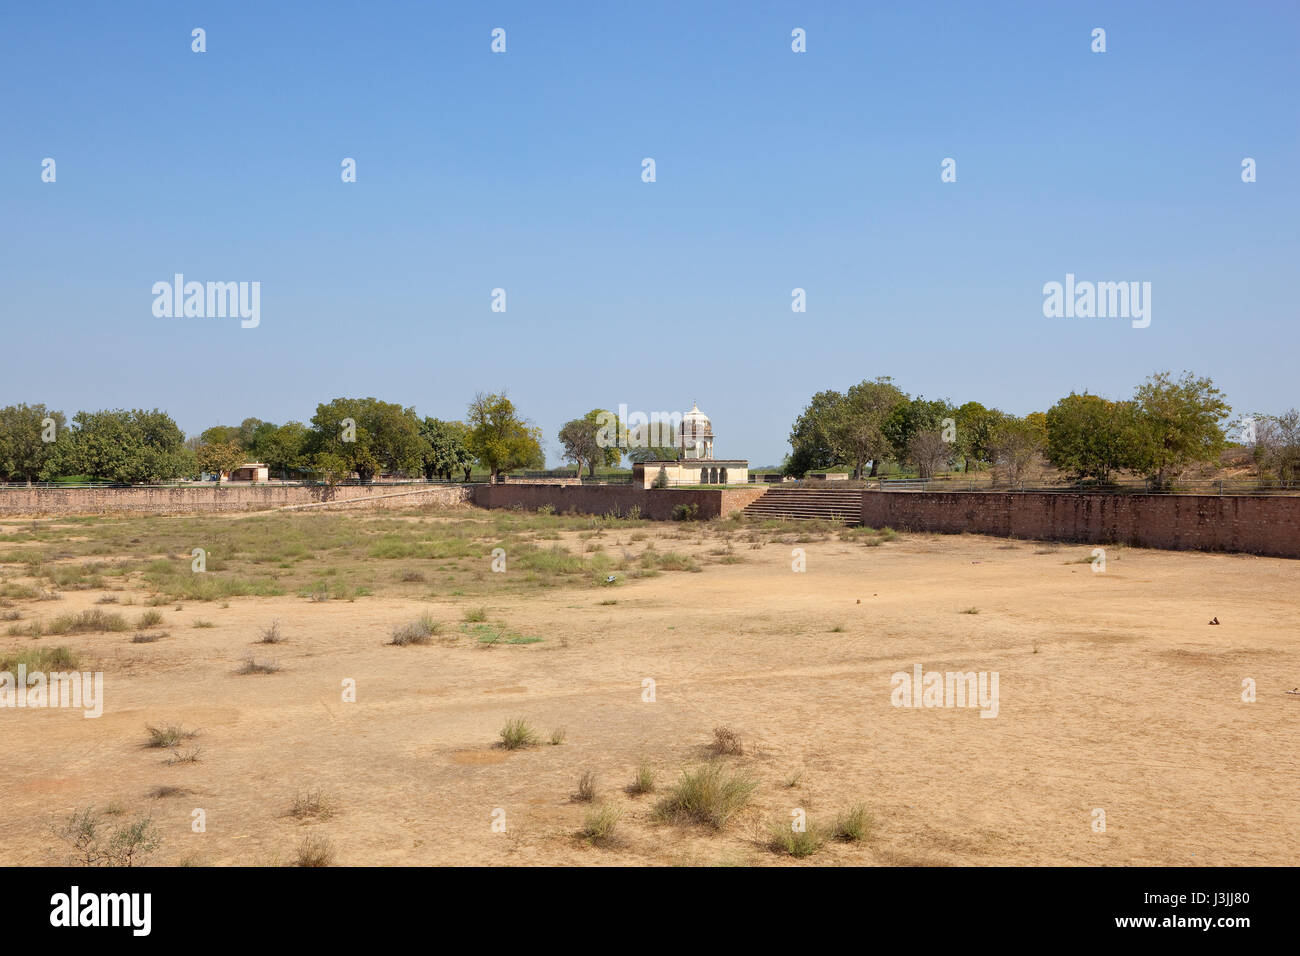 Un sable sec à la place sarovar historique de Jal Mahal en Inde du nord sous un ciel bleu Banque D'Images